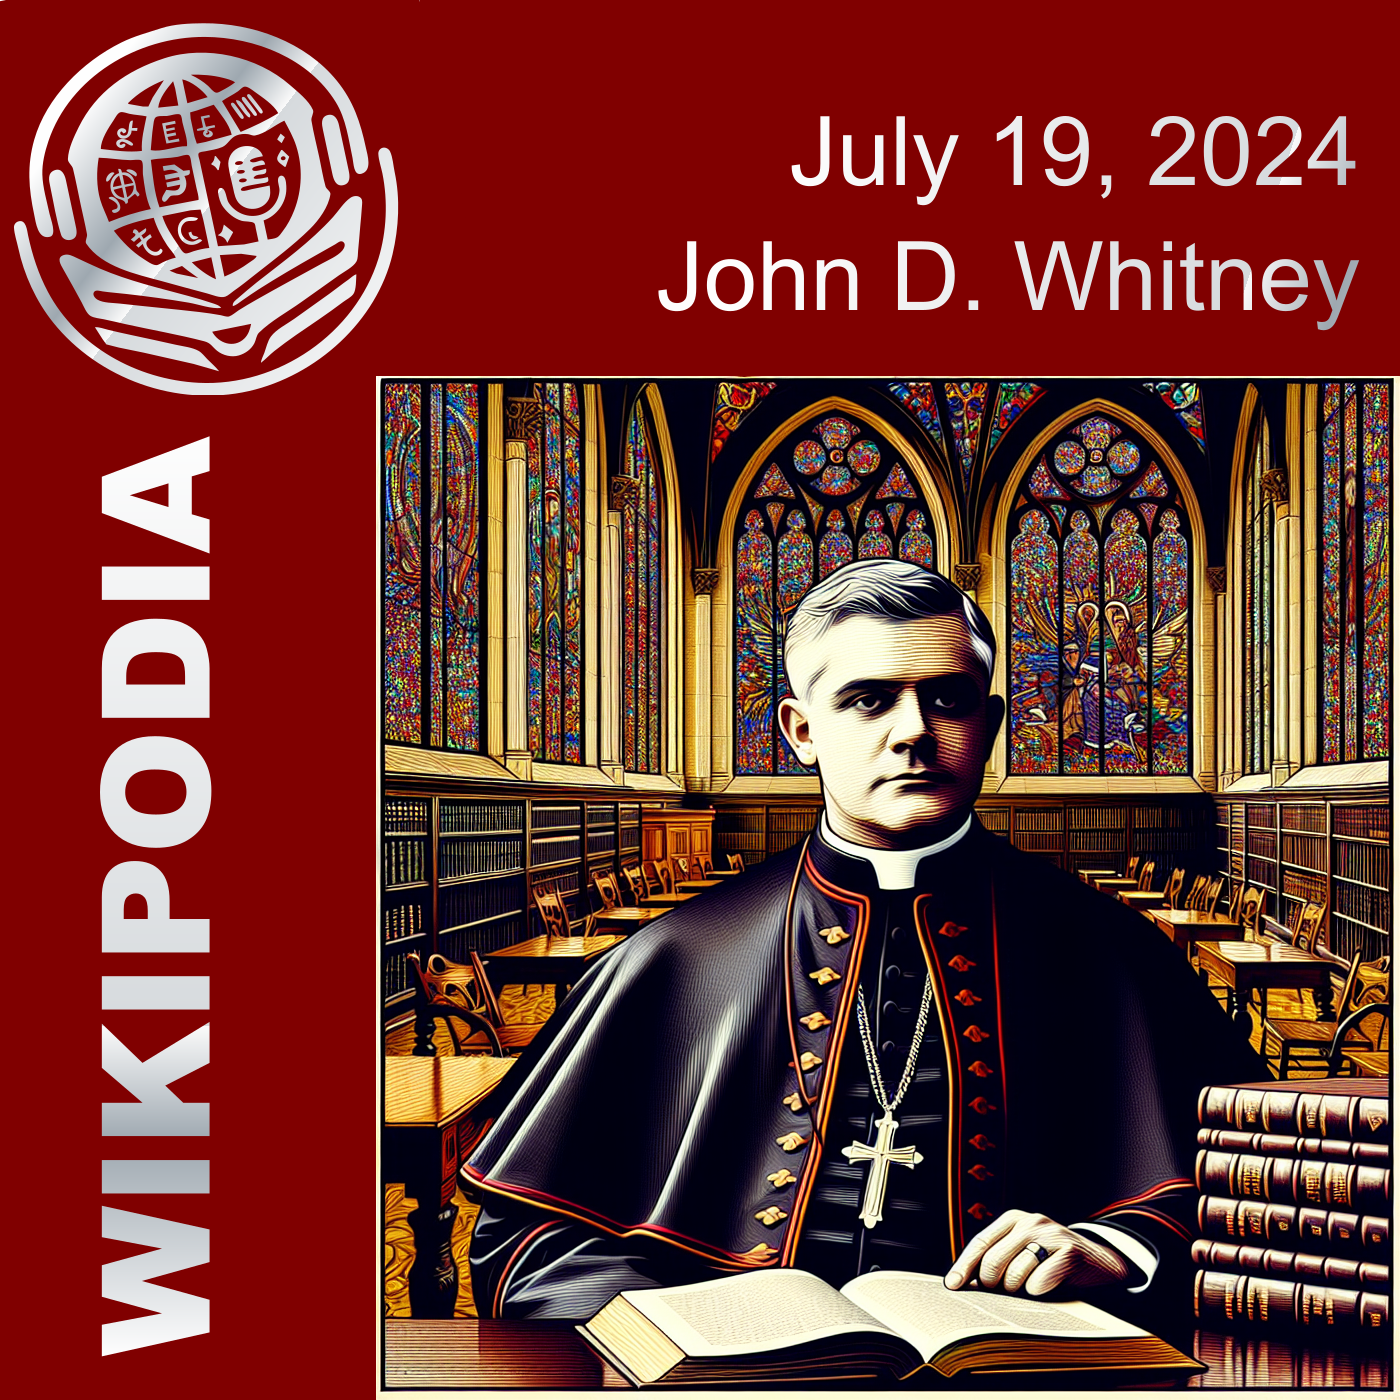 John D. Whitney